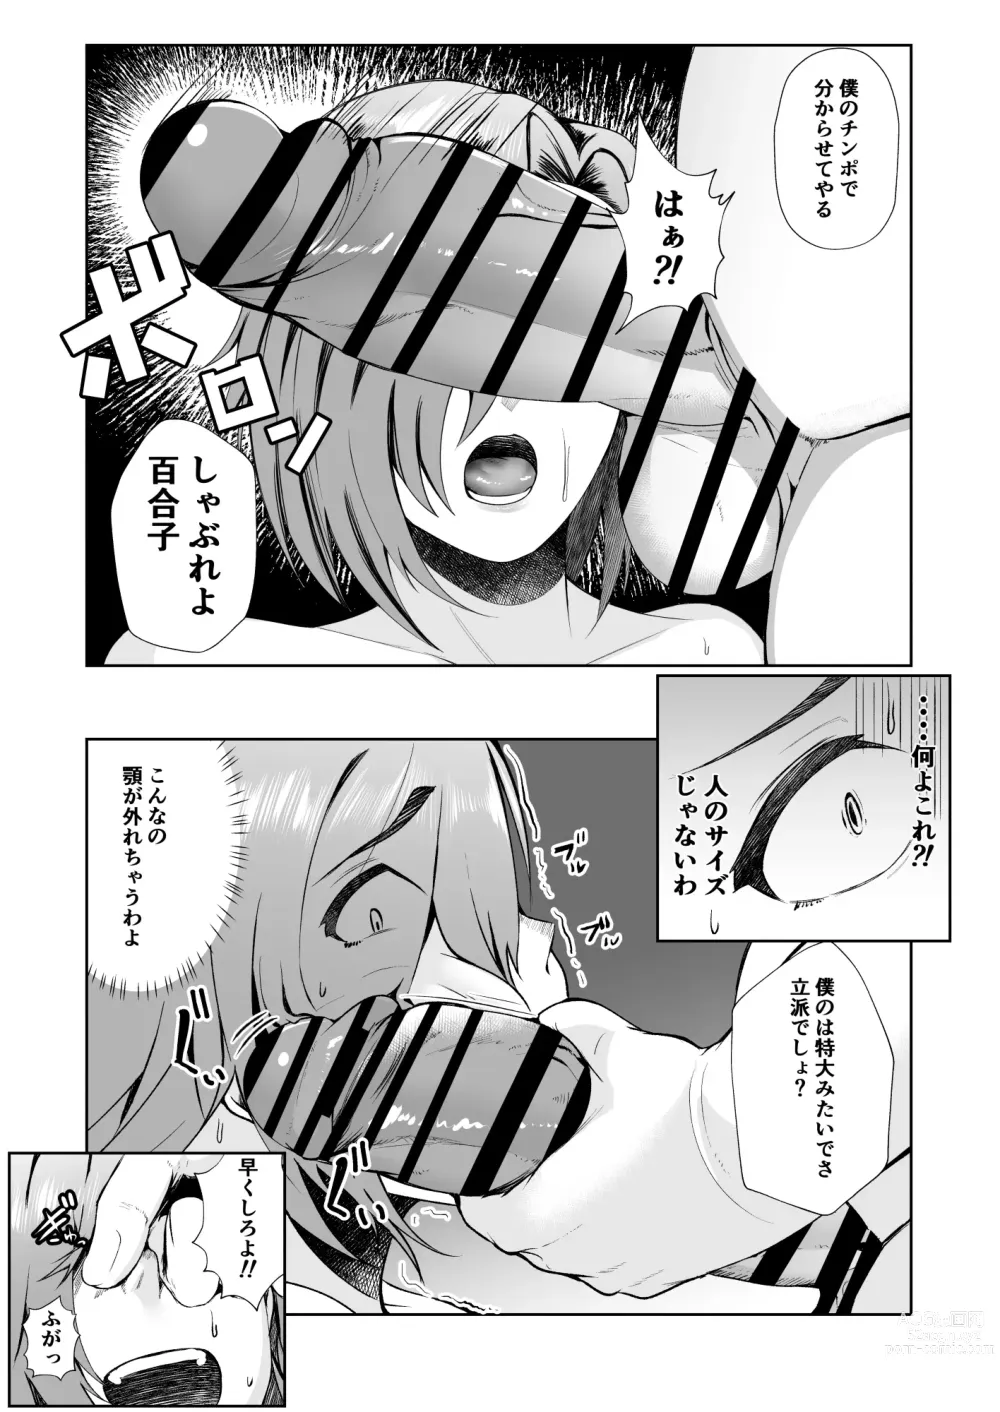 Page 13 of doujinshi Ojisanga shakinwo tsumano karadade hotenshitehoshiito iwaretanode kaidakushita hanashi